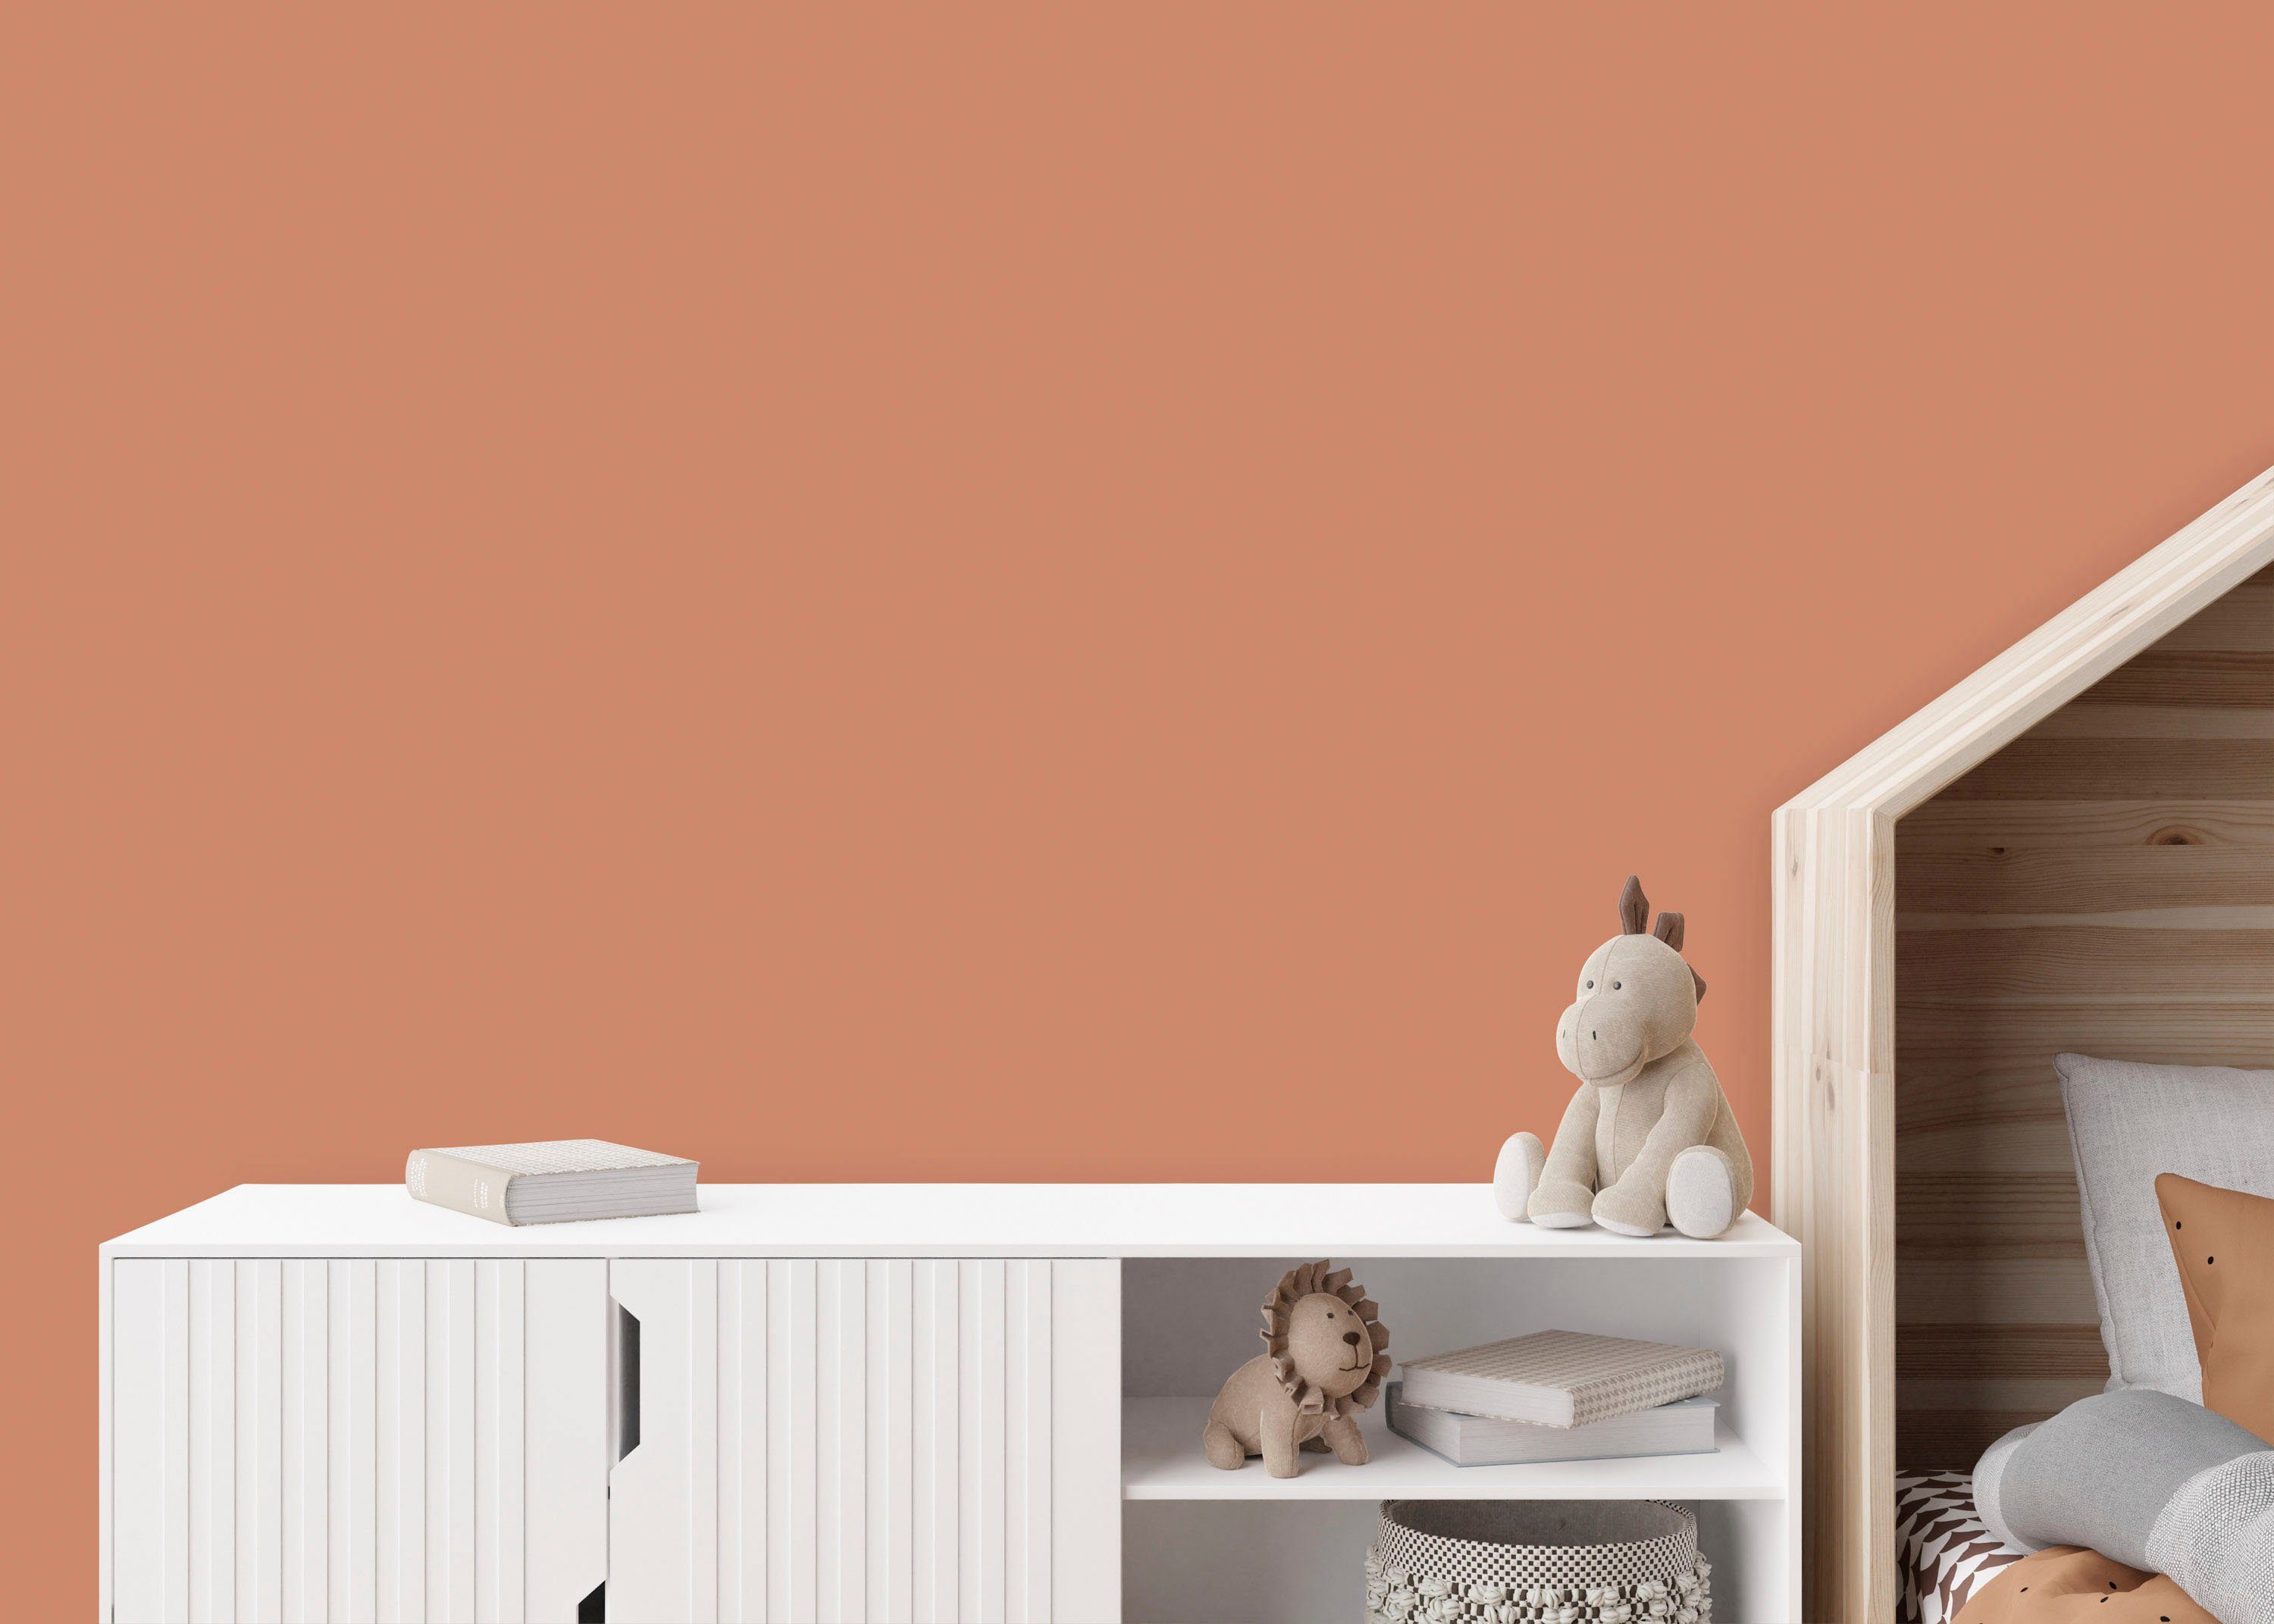 Création Deckenfarbe KITCHEN, Schlafzimmer und Ruddy Orangetöne Rosehip für Wand- versch. Küche, Wohnzimmer A.S. THE Innenfarbe Seidenmatt Flur TCK5012 COLOR